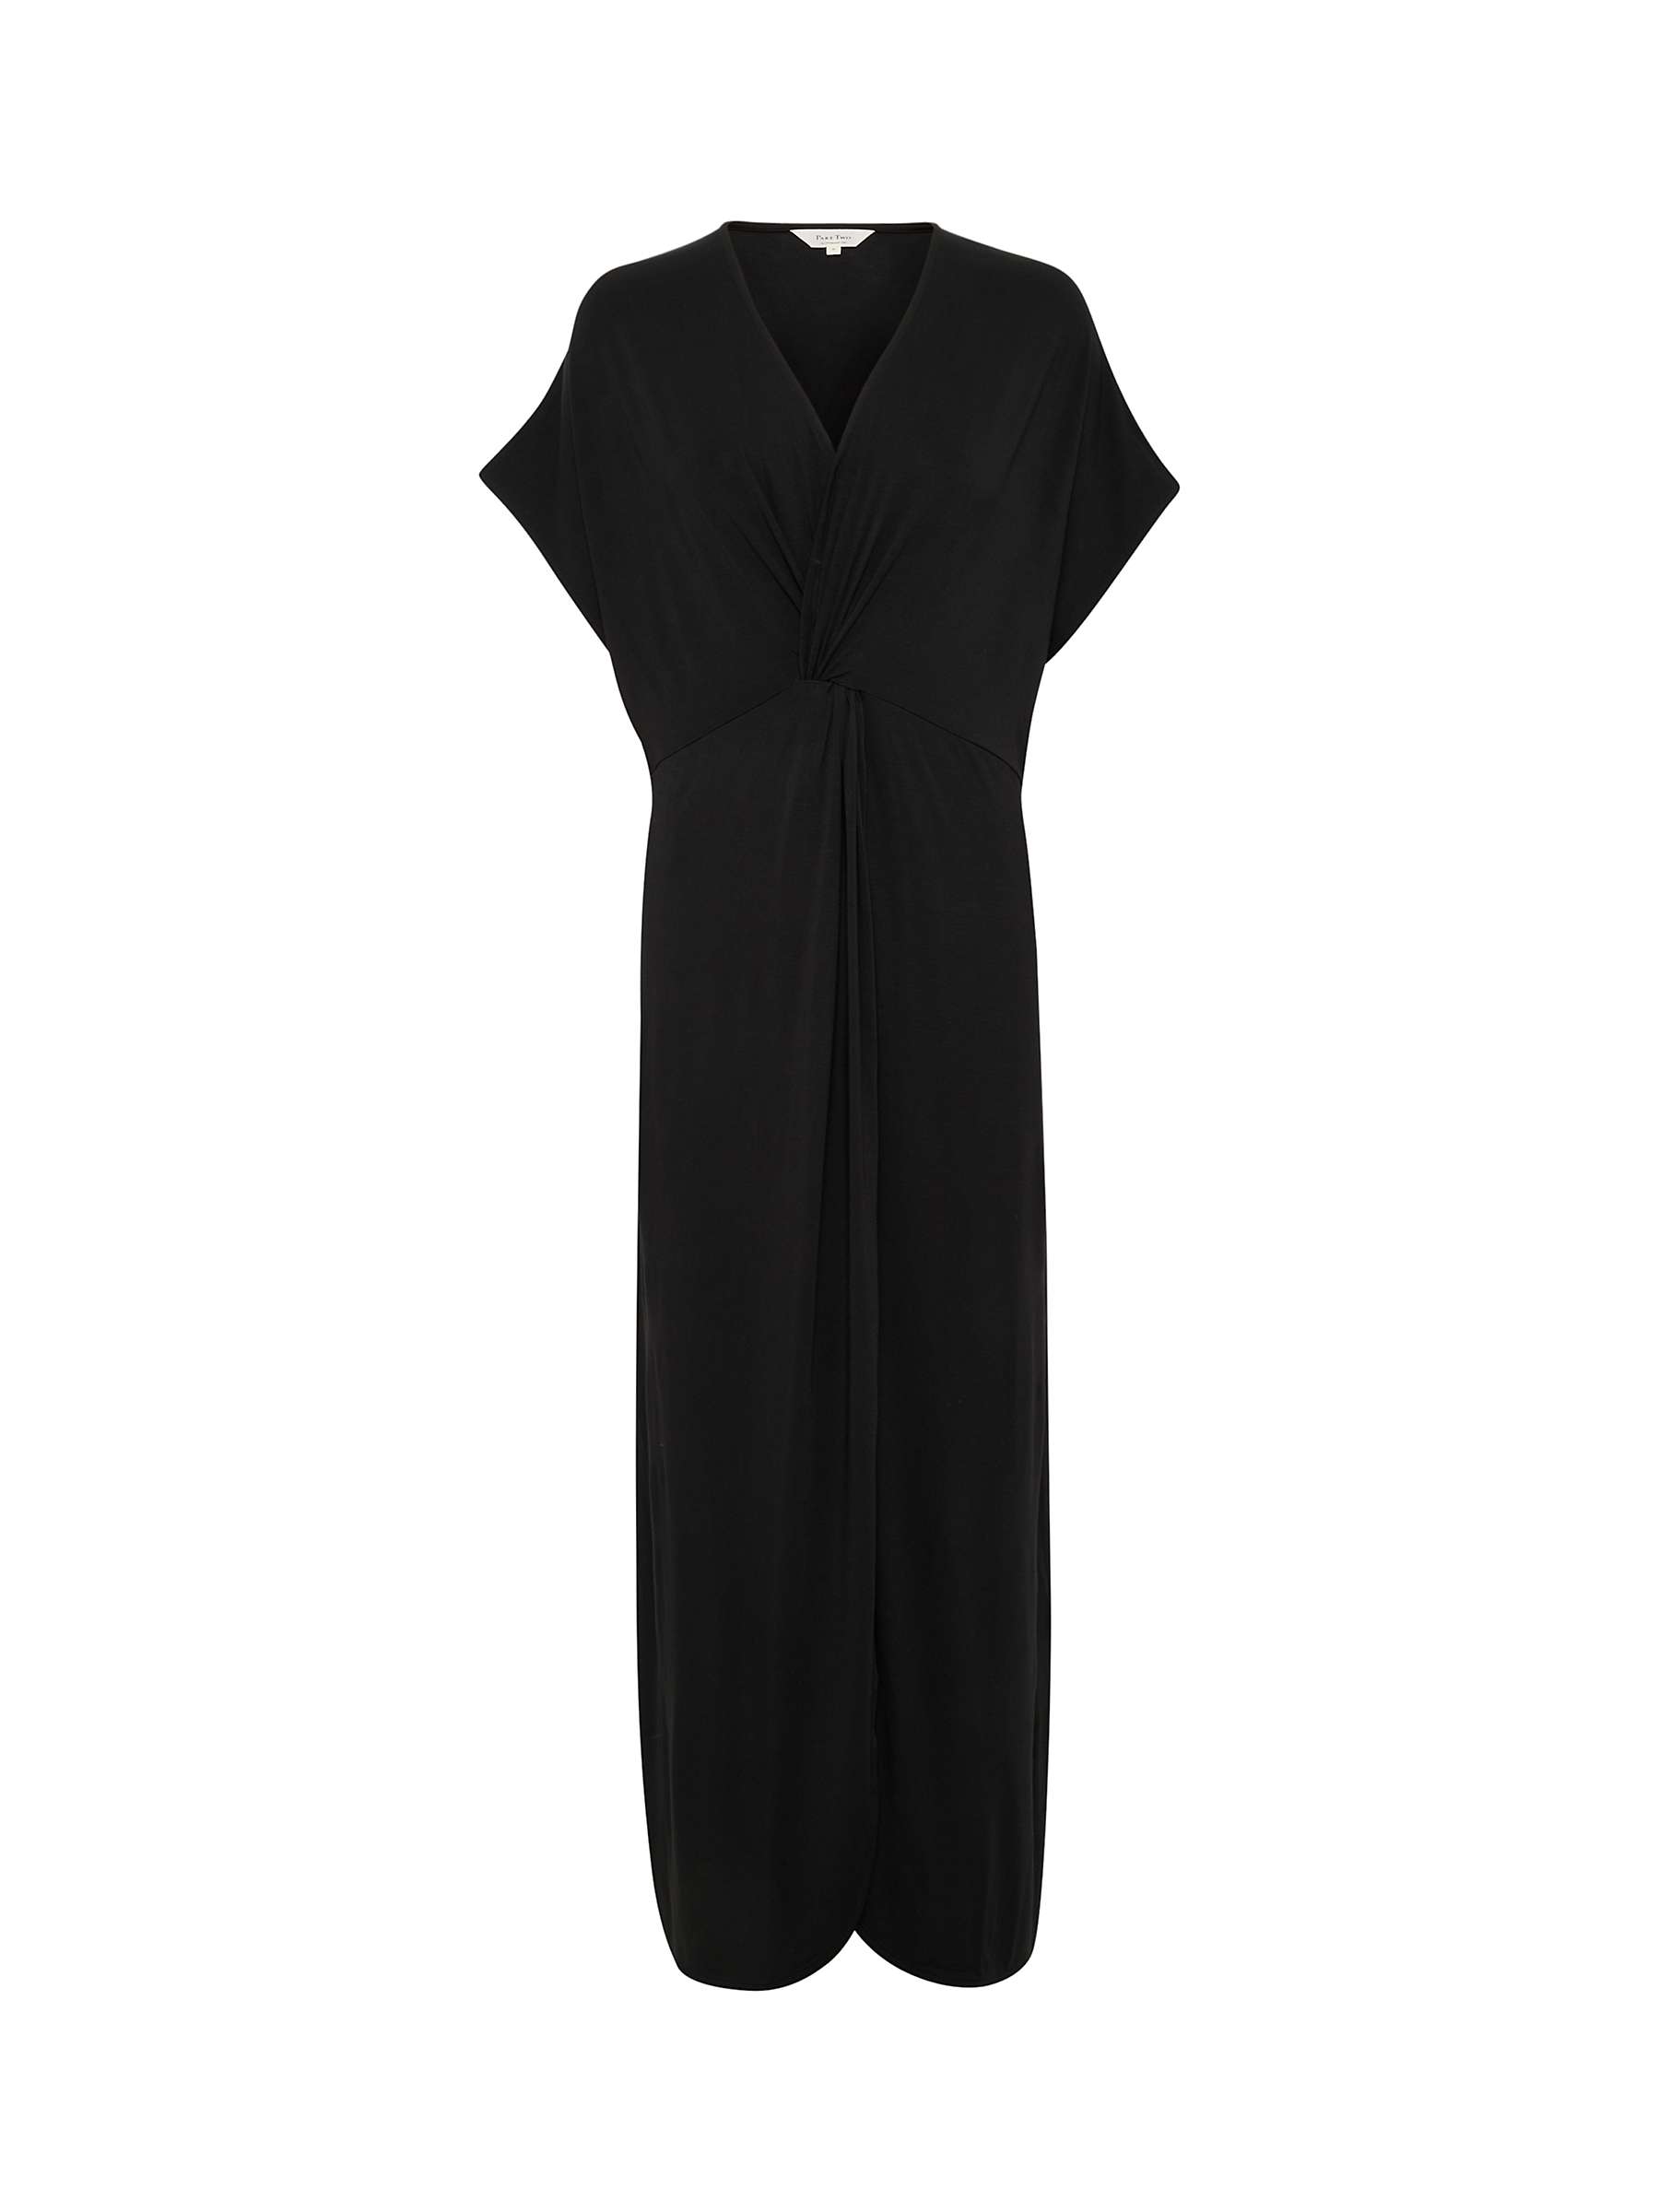 Buy Part Two Griet Short Sleeve V-Neck Maxi Dress, Black Online at johnlewis.com